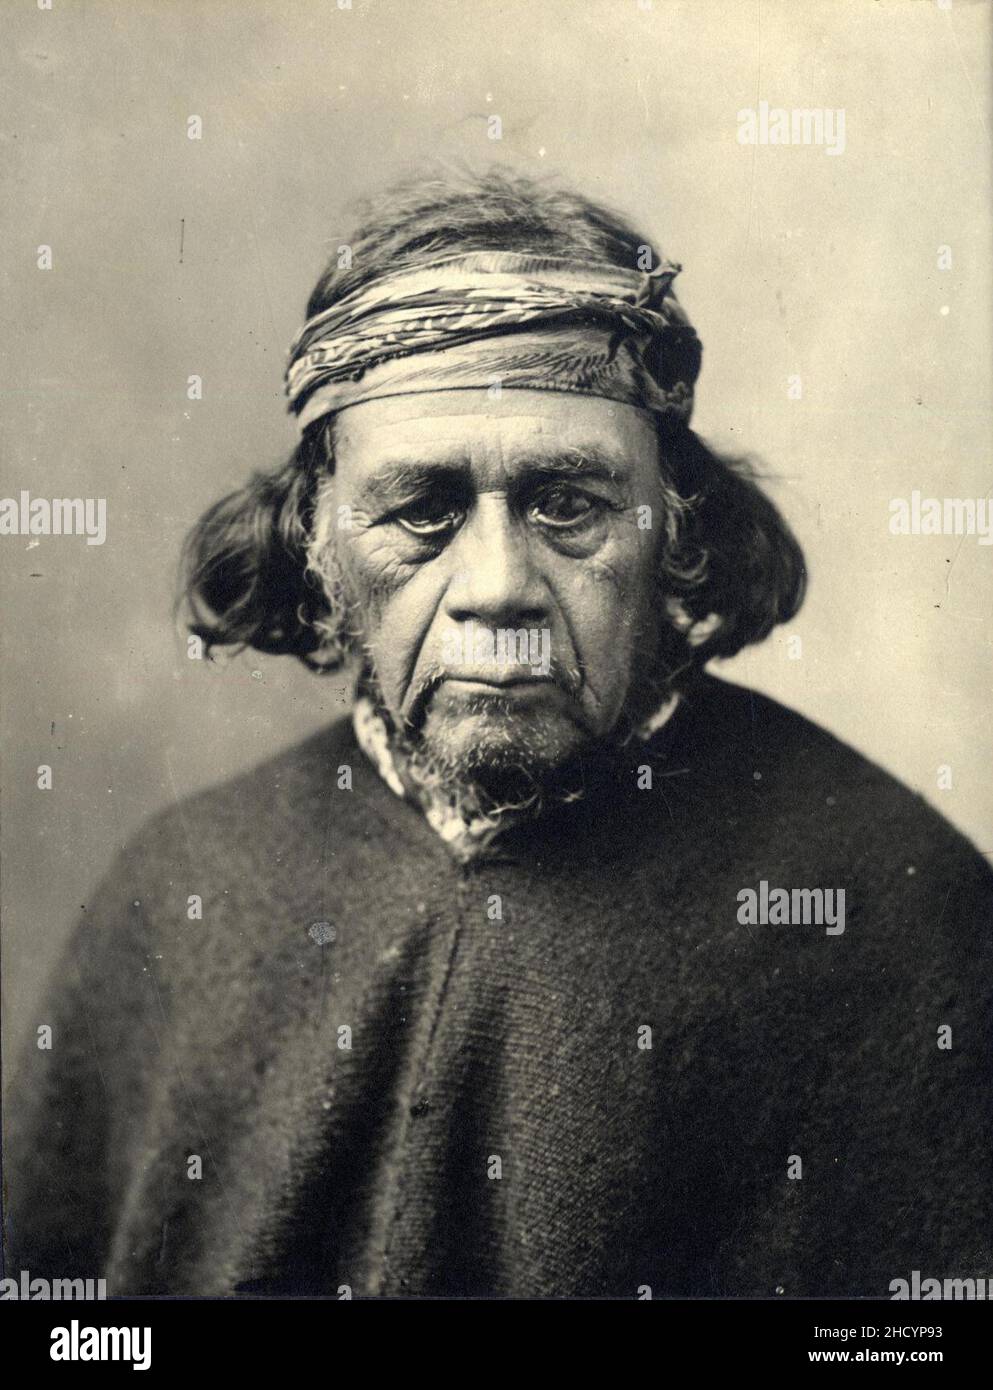 Retrato de hombre mapuche. Stock Photo